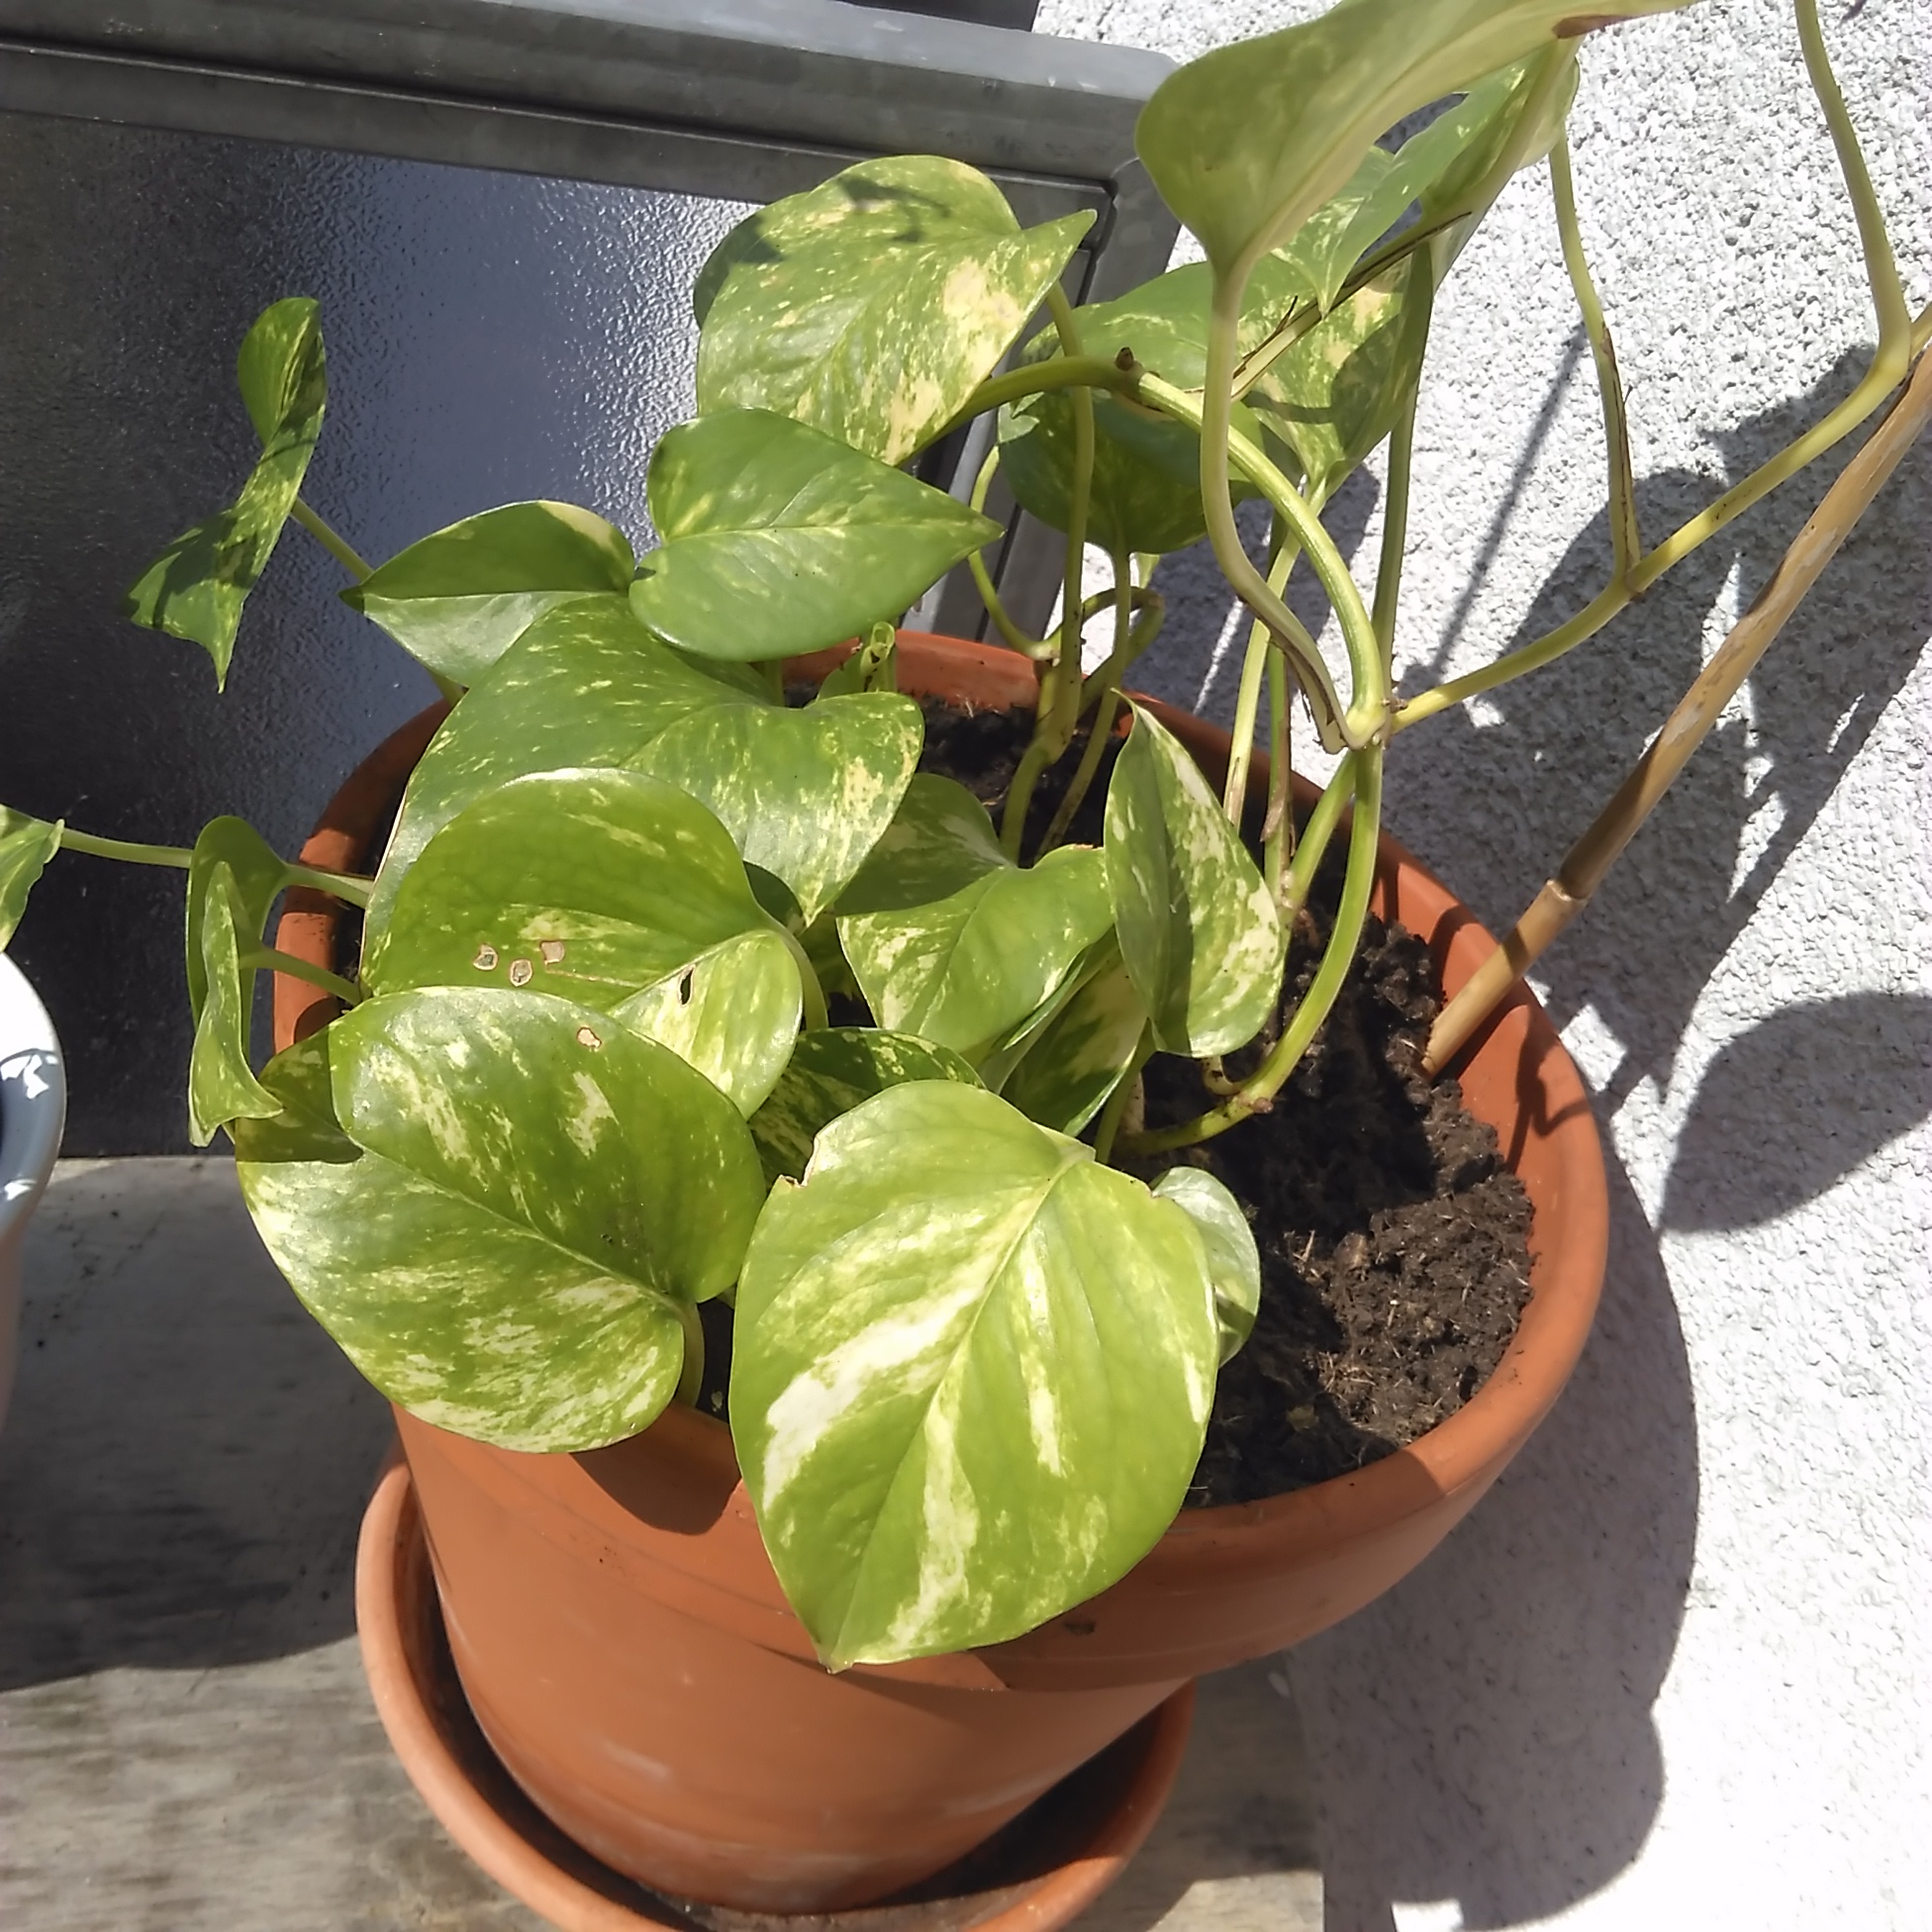 Welche Kletterpflanze / Rankenpflanze ist das? (Pflanzen, Garten, Balkon)